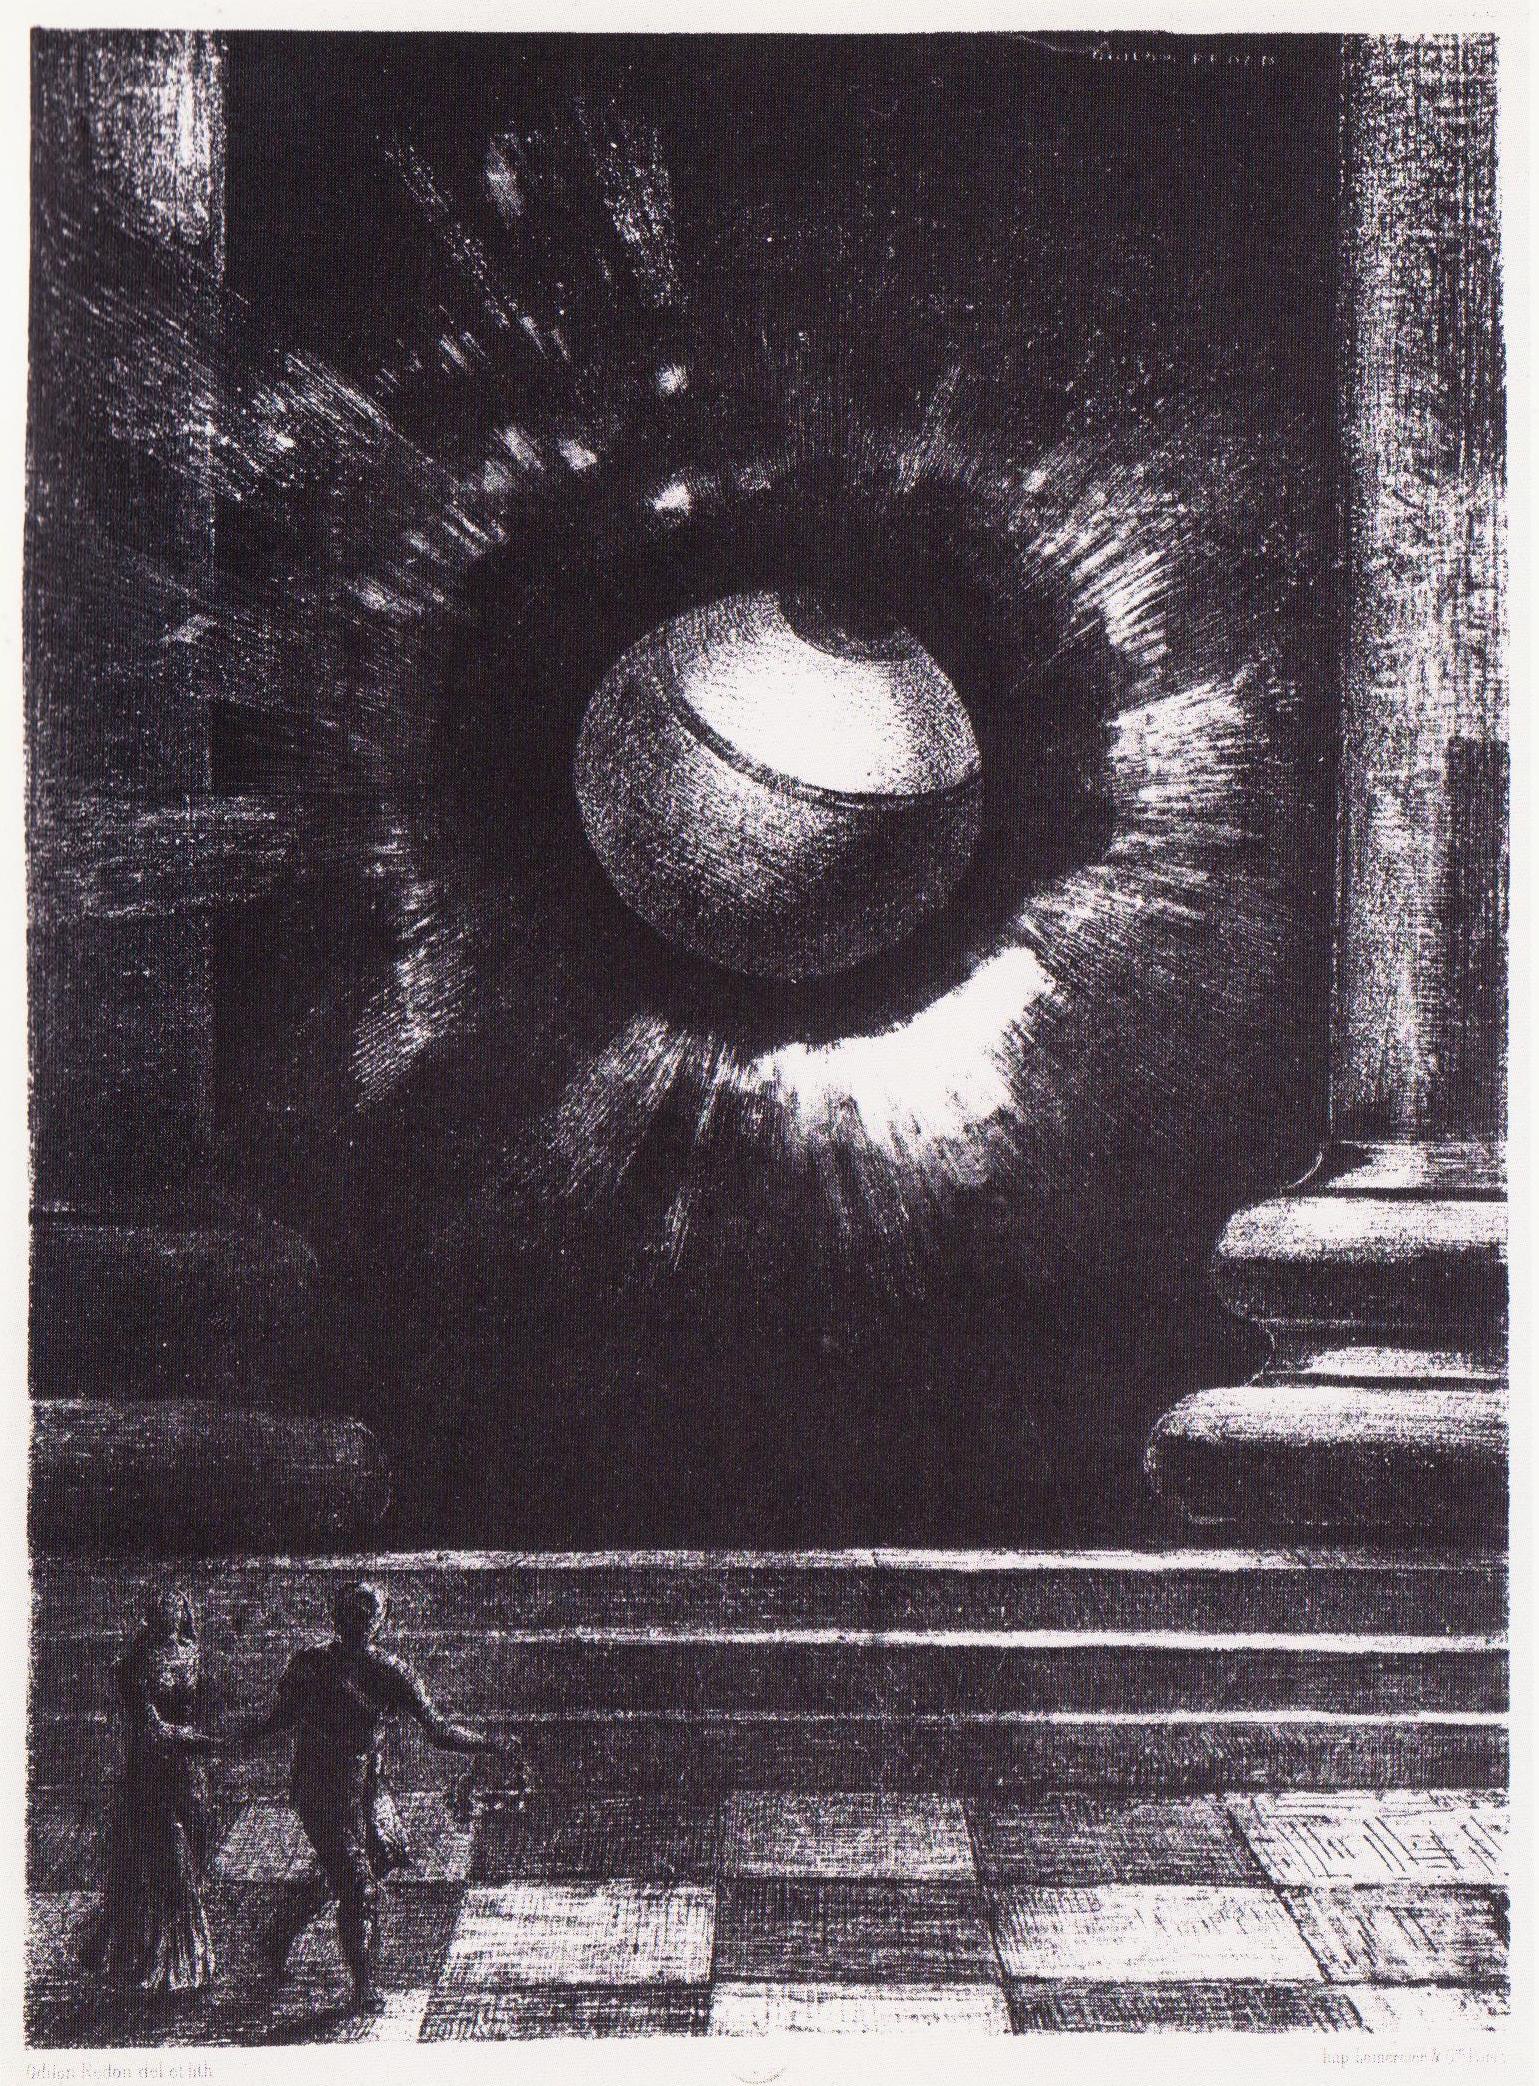 Widzenie by Odilon Redon - 1879 - 27.4 x 19.8 cm 